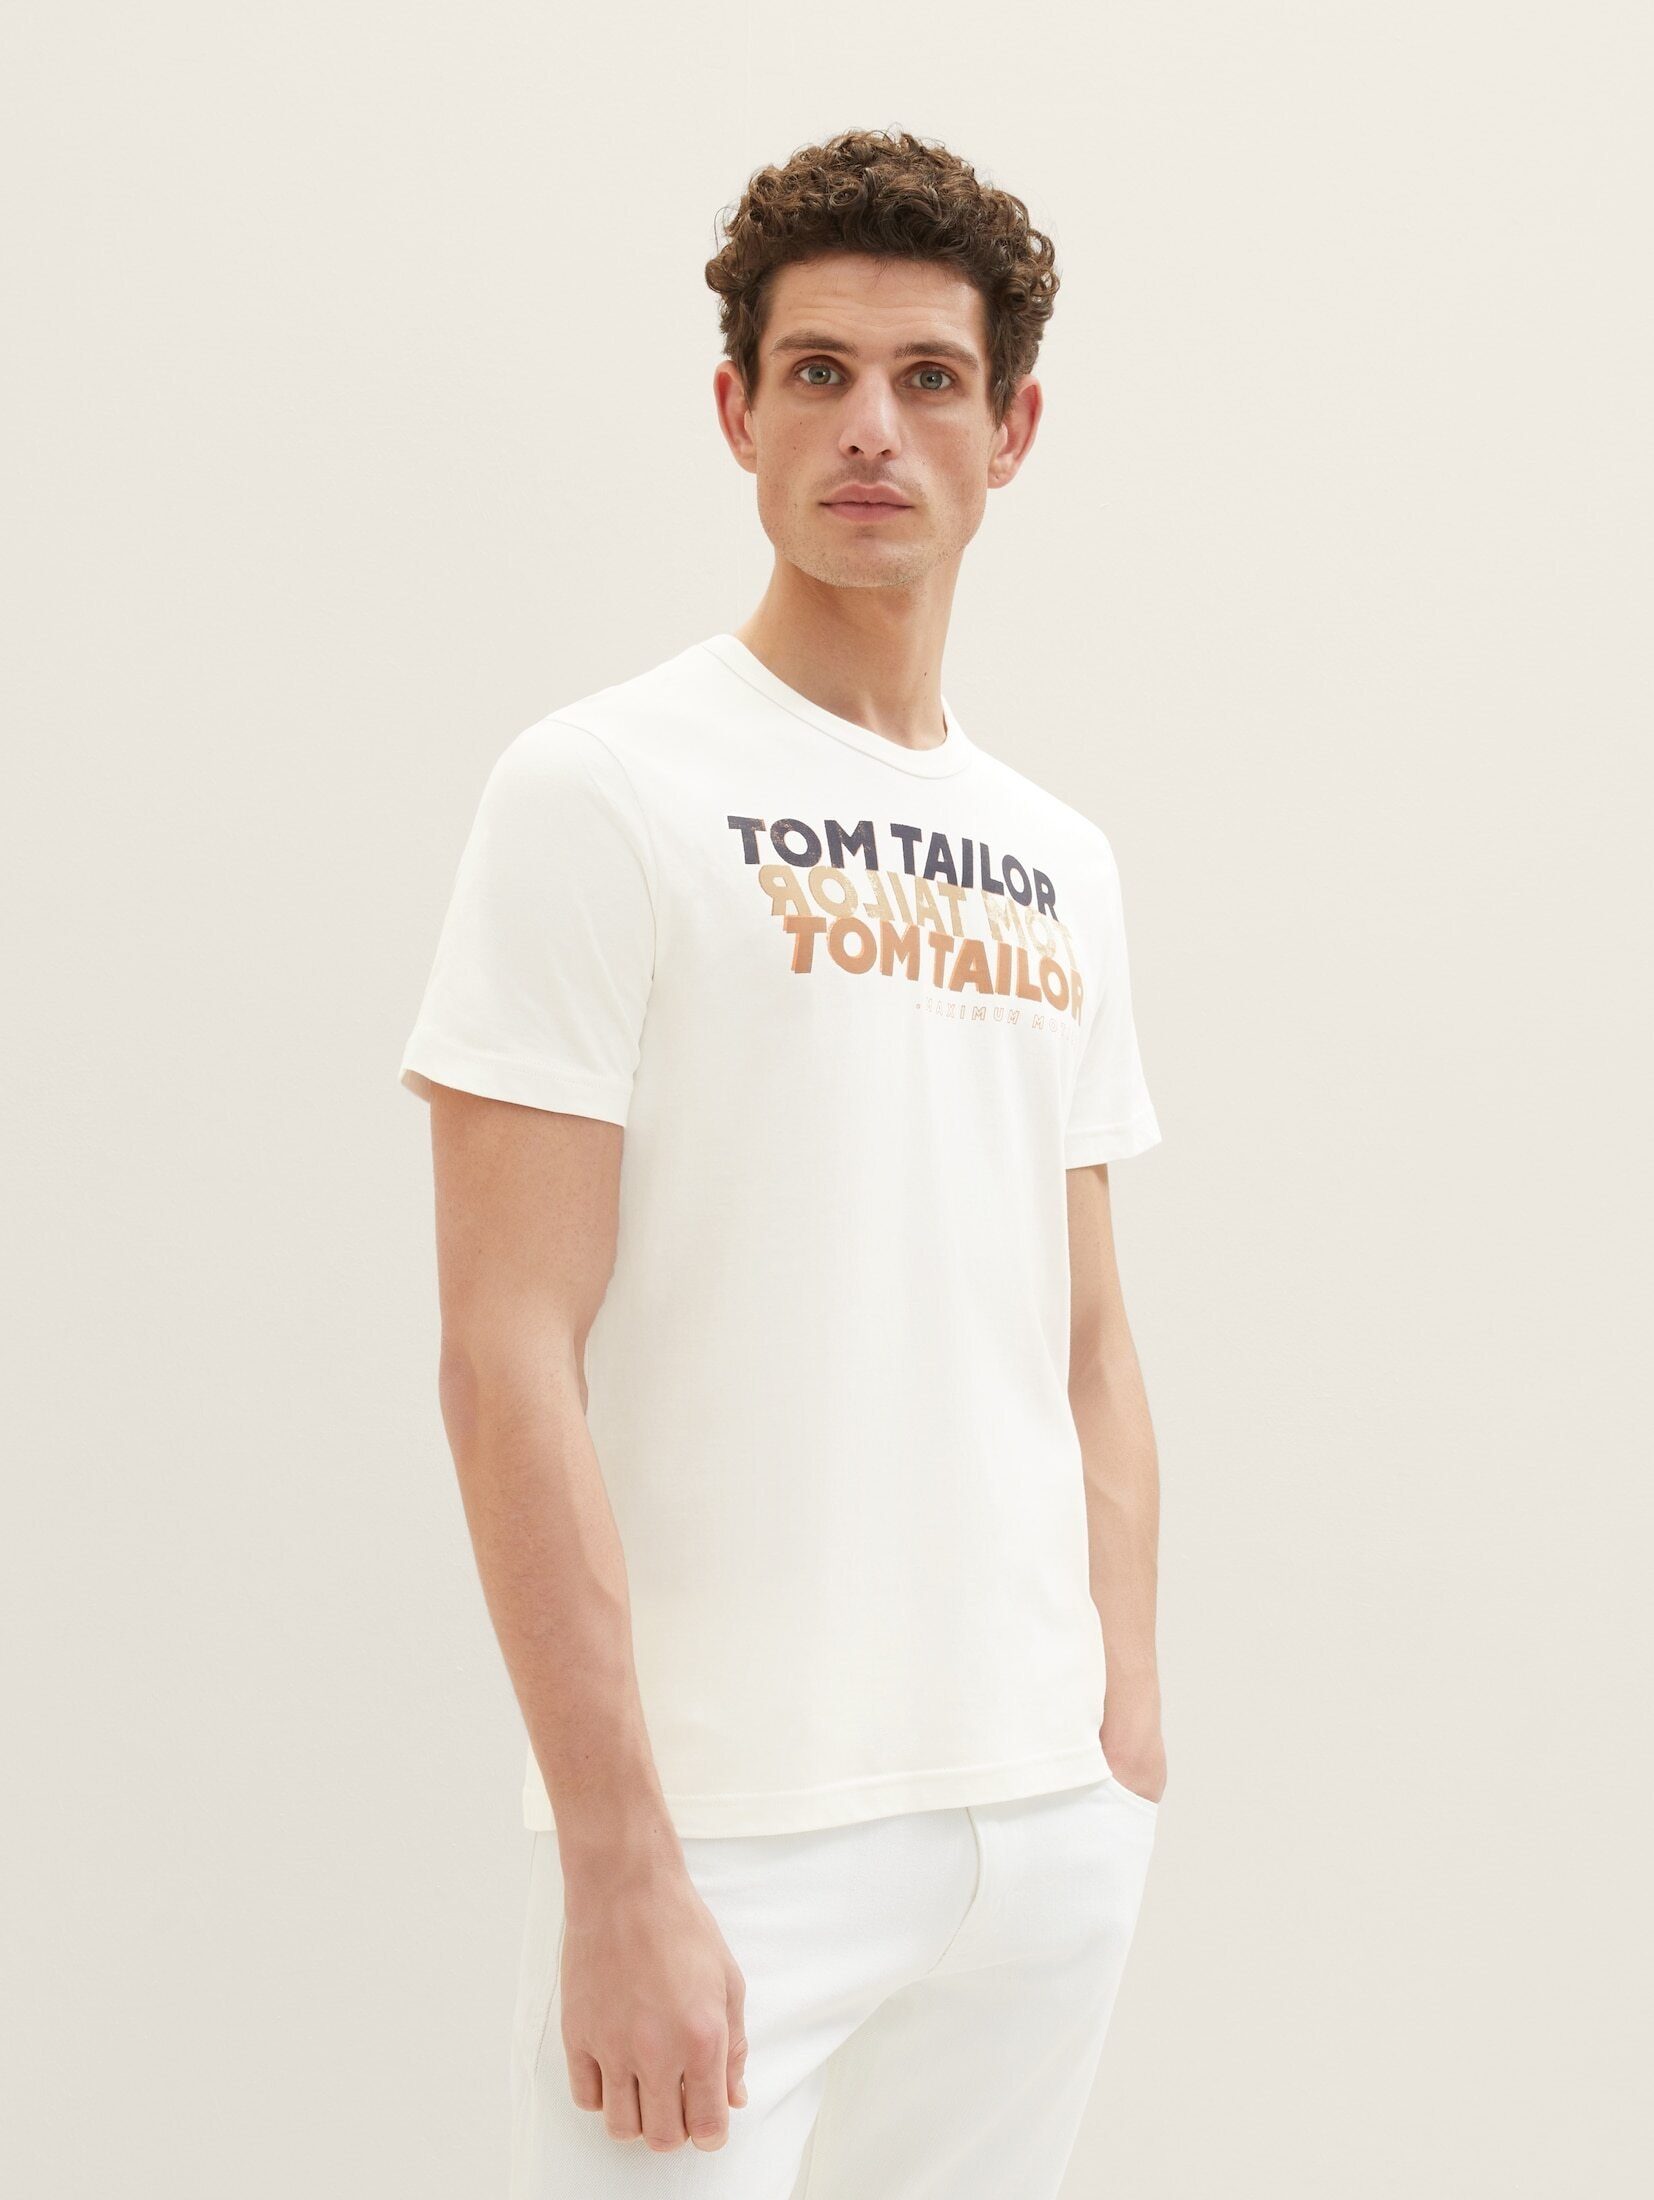 TOM TAILOR T-Shirt T-Shirt mit Schriftzug white off